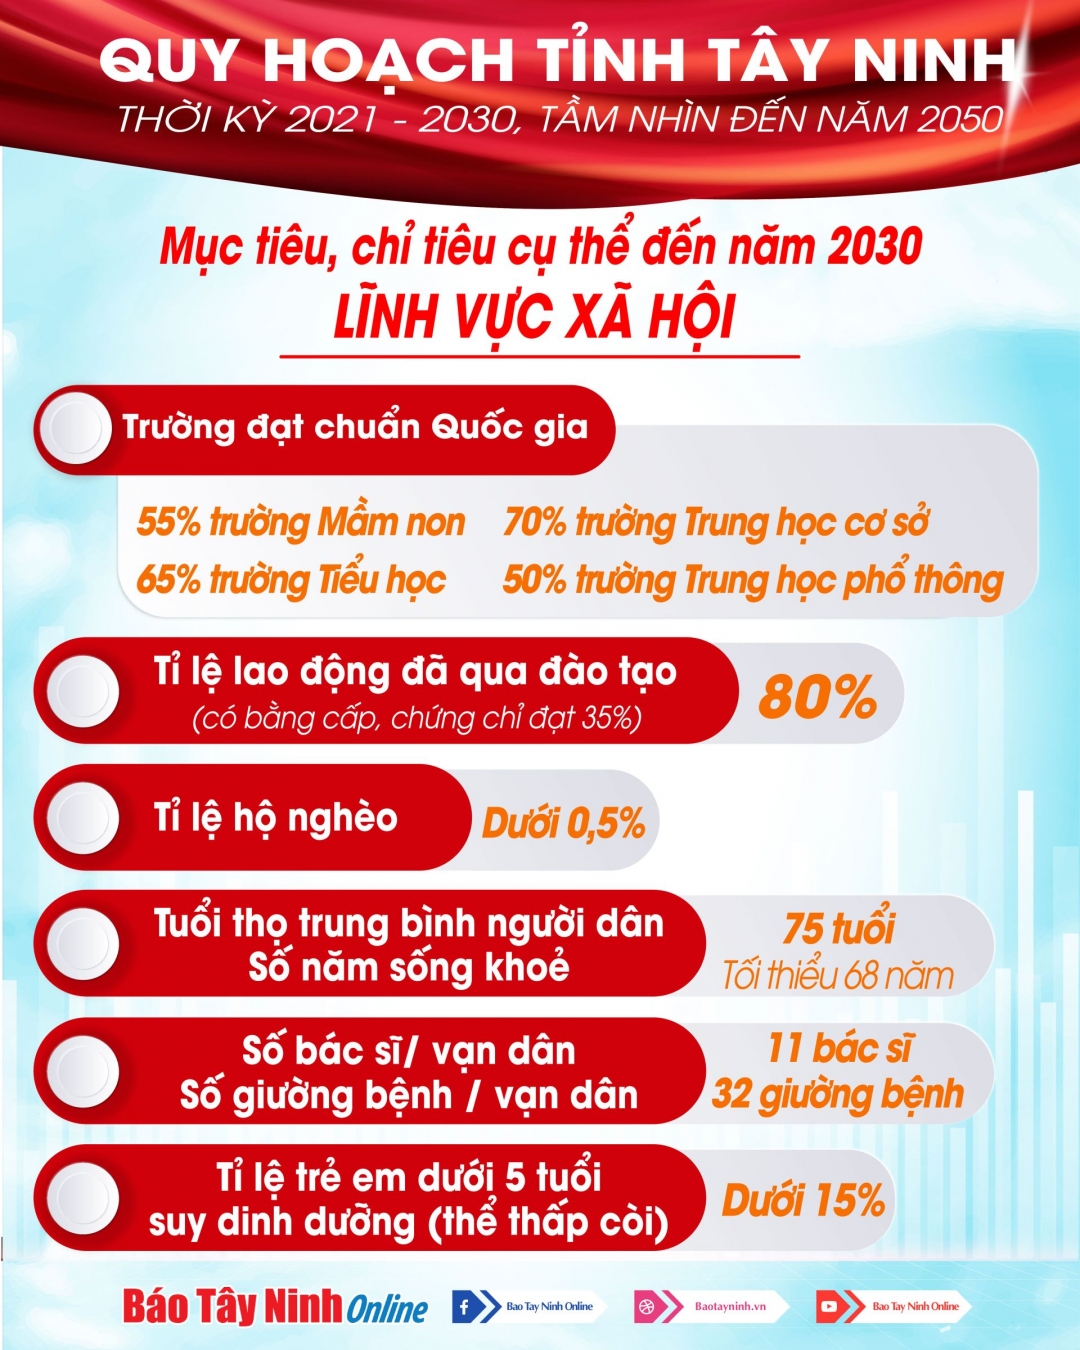 Quy hoạch tỉnh Tây Ninh đặt mục tiêu, chỉ tiêu cụ thể (lĩnh vực xã hội) đến năm 2030